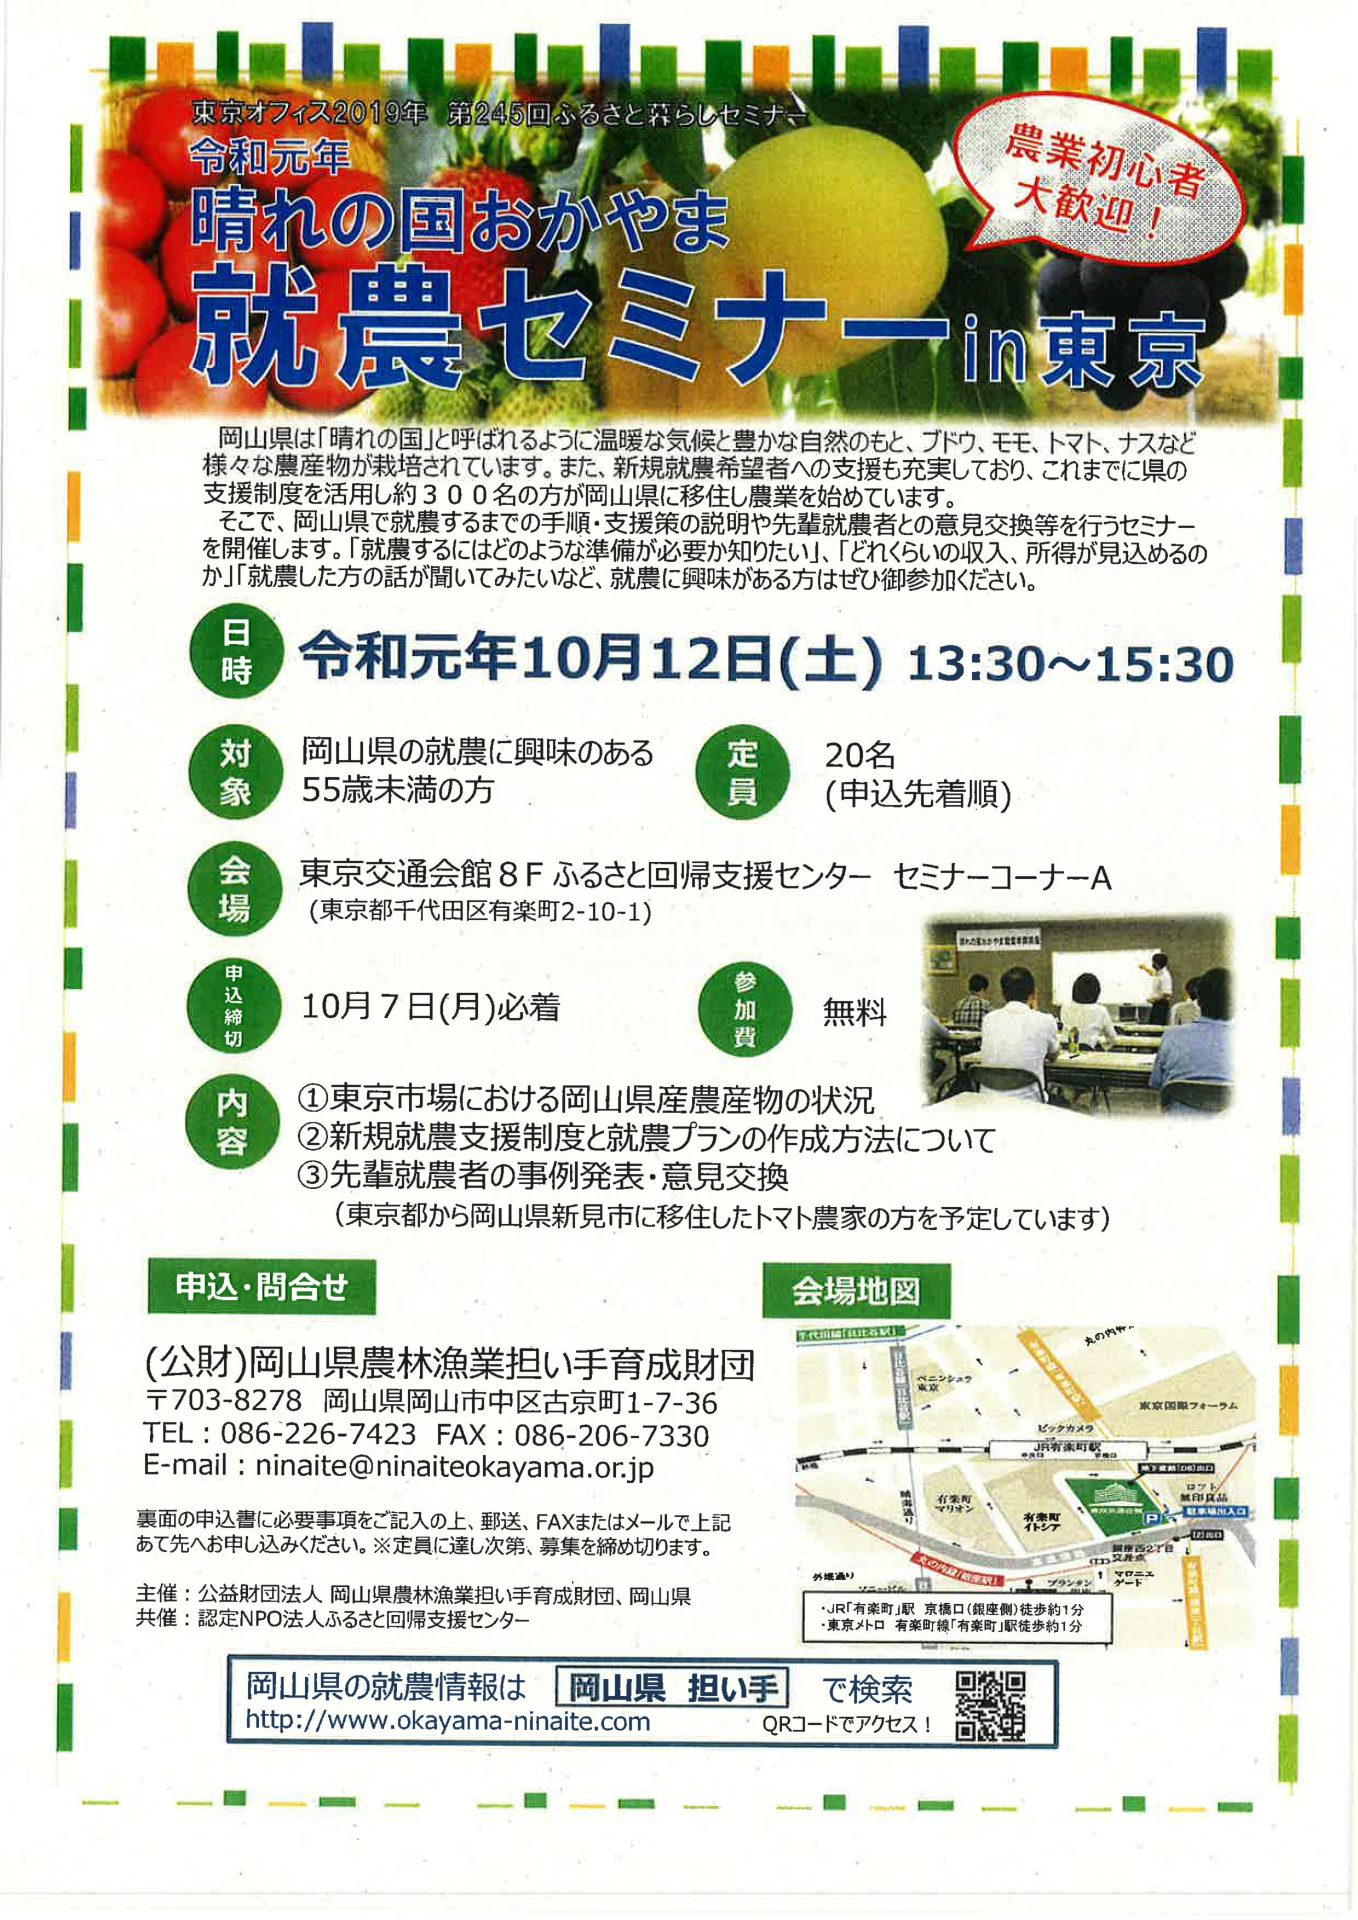 【開催延期】晴れの国おかやま「就農セミナー」in東京 | 移住関連イベント情報